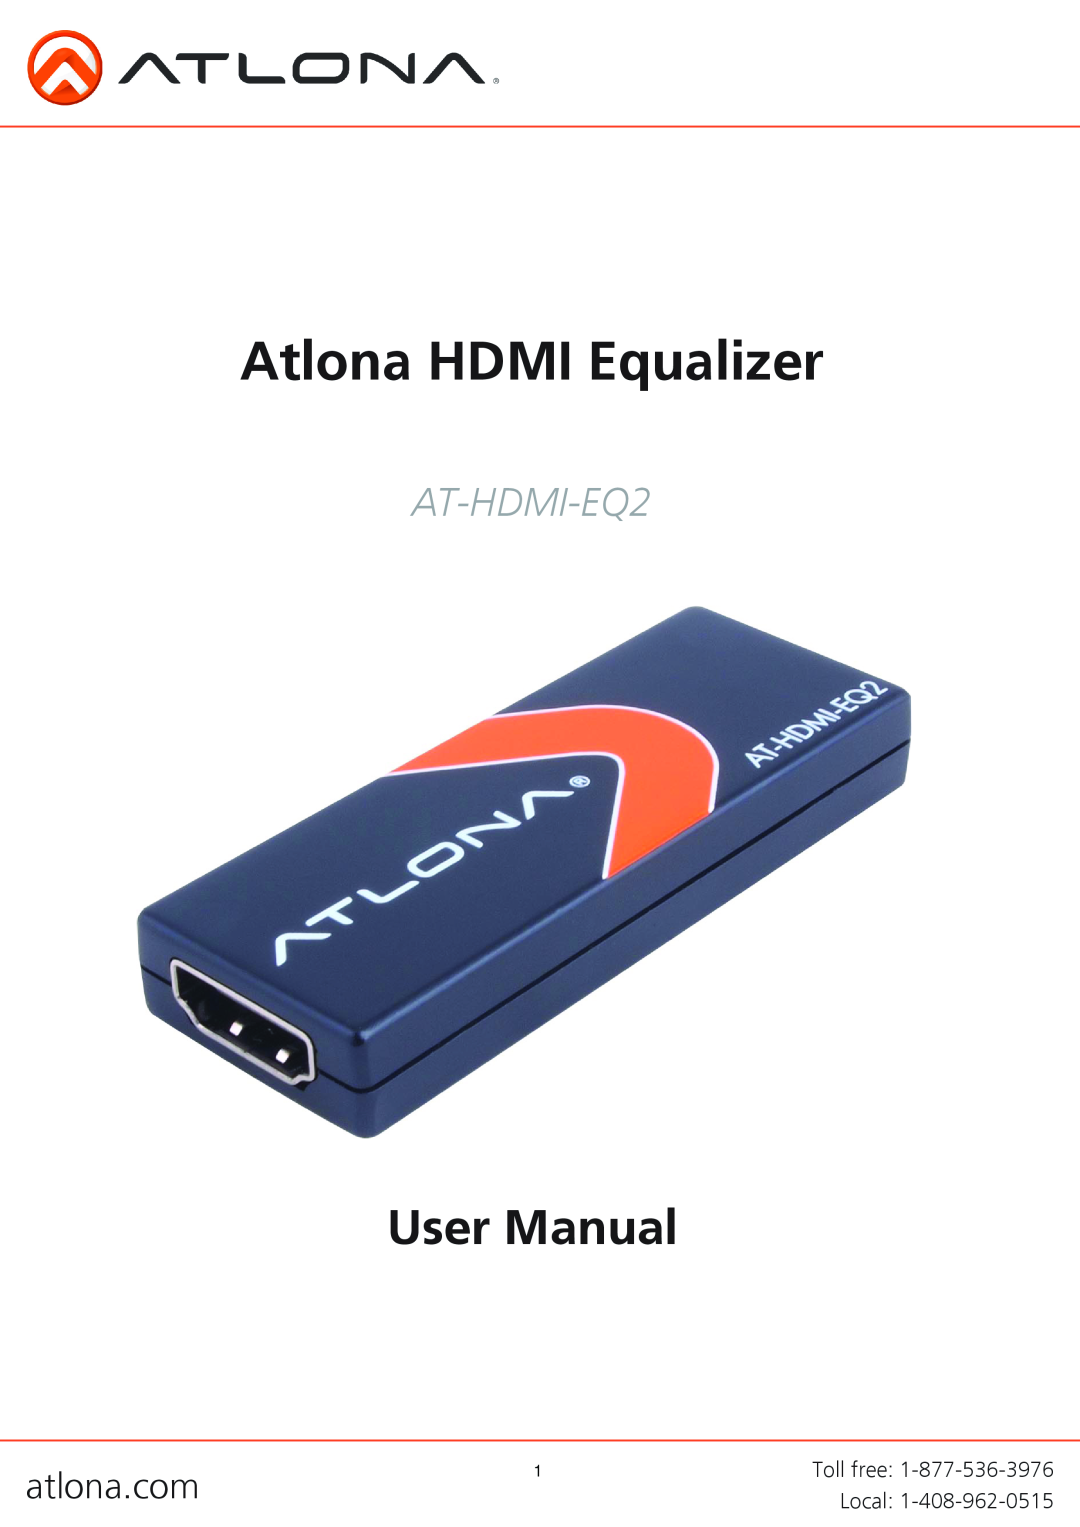 Atlona AT-HDMI-EQ2 user manual Atlona HDMI Equalizer 